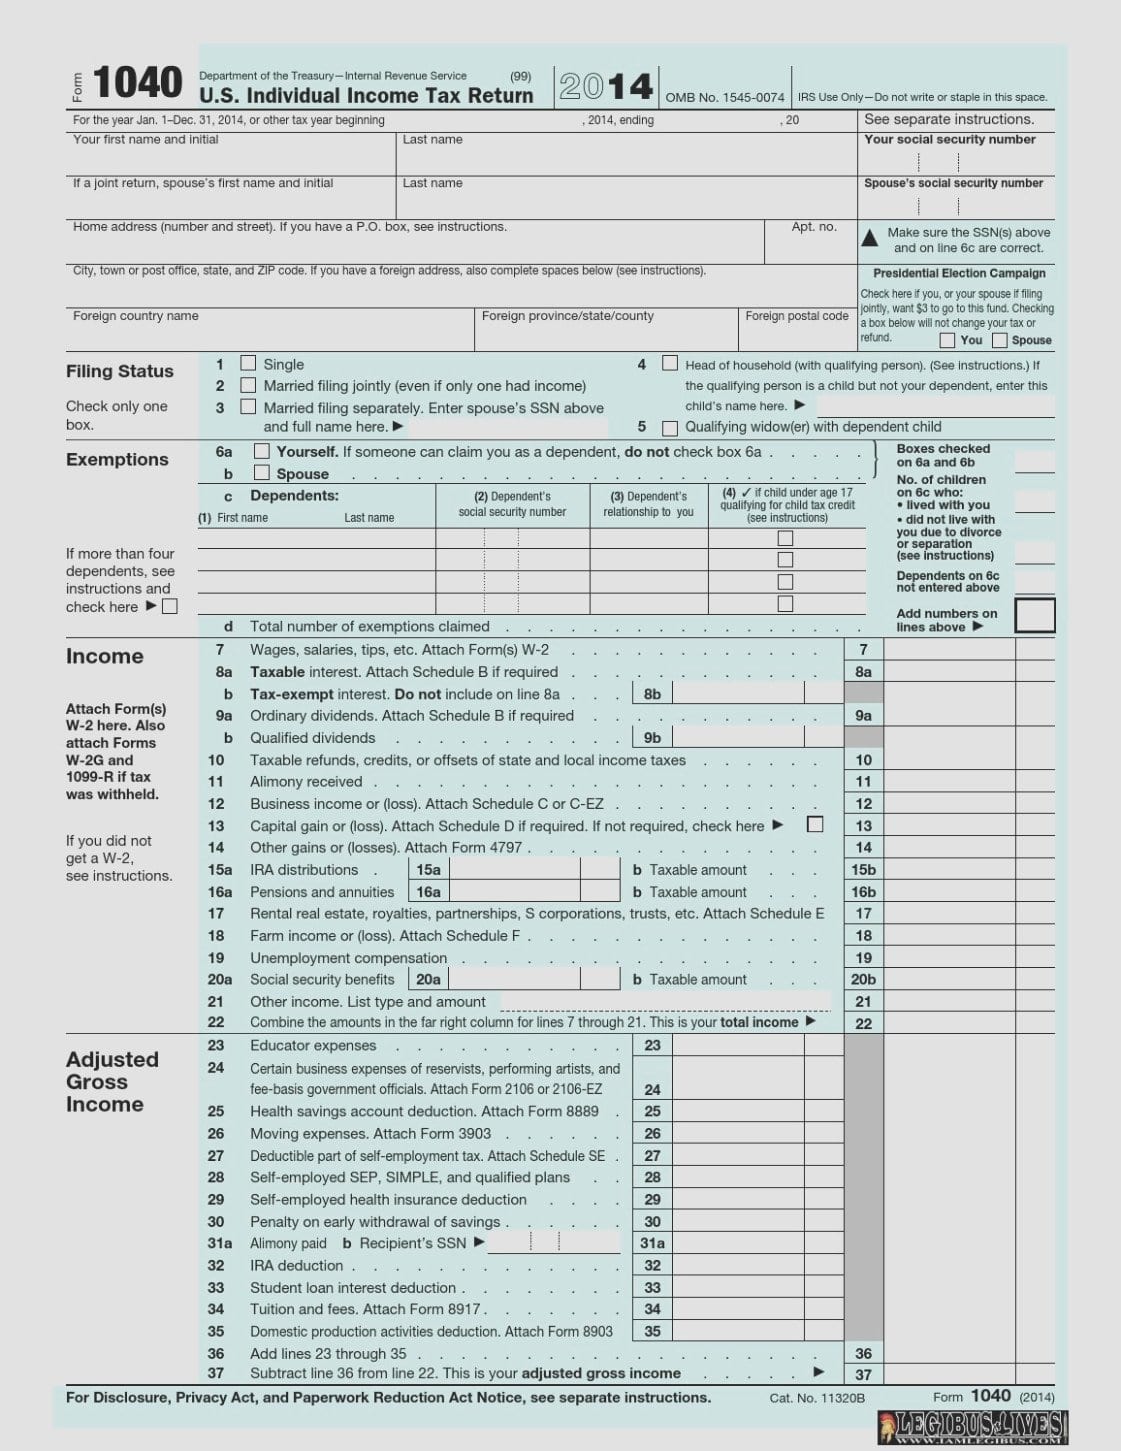 Tax Computation Worksheet Irs Luxury U S Individual In E Tax Return Inside Tax Computation Worksheet